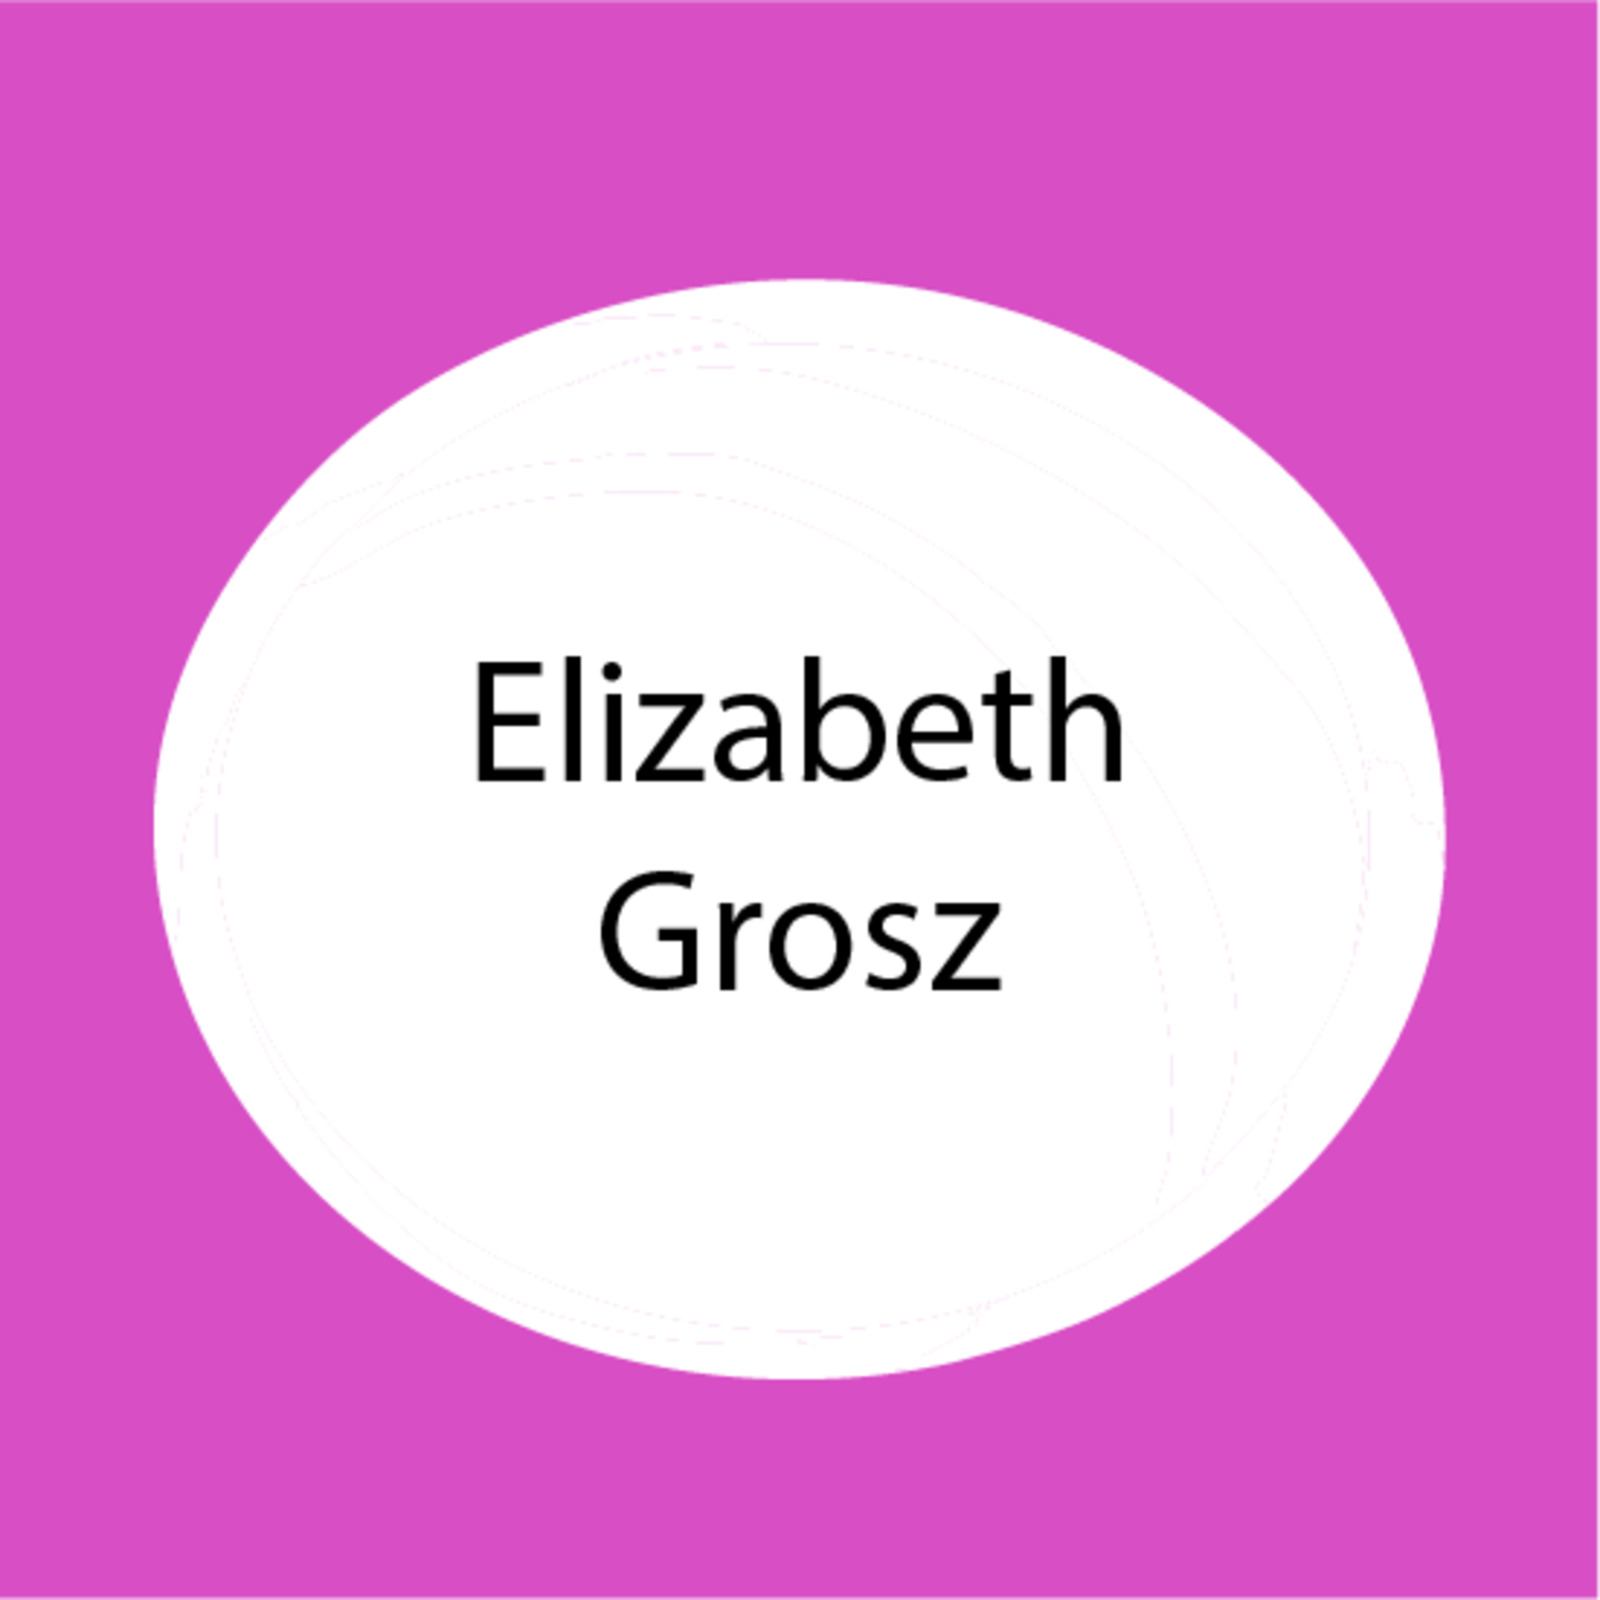 Elizabeth Grosz